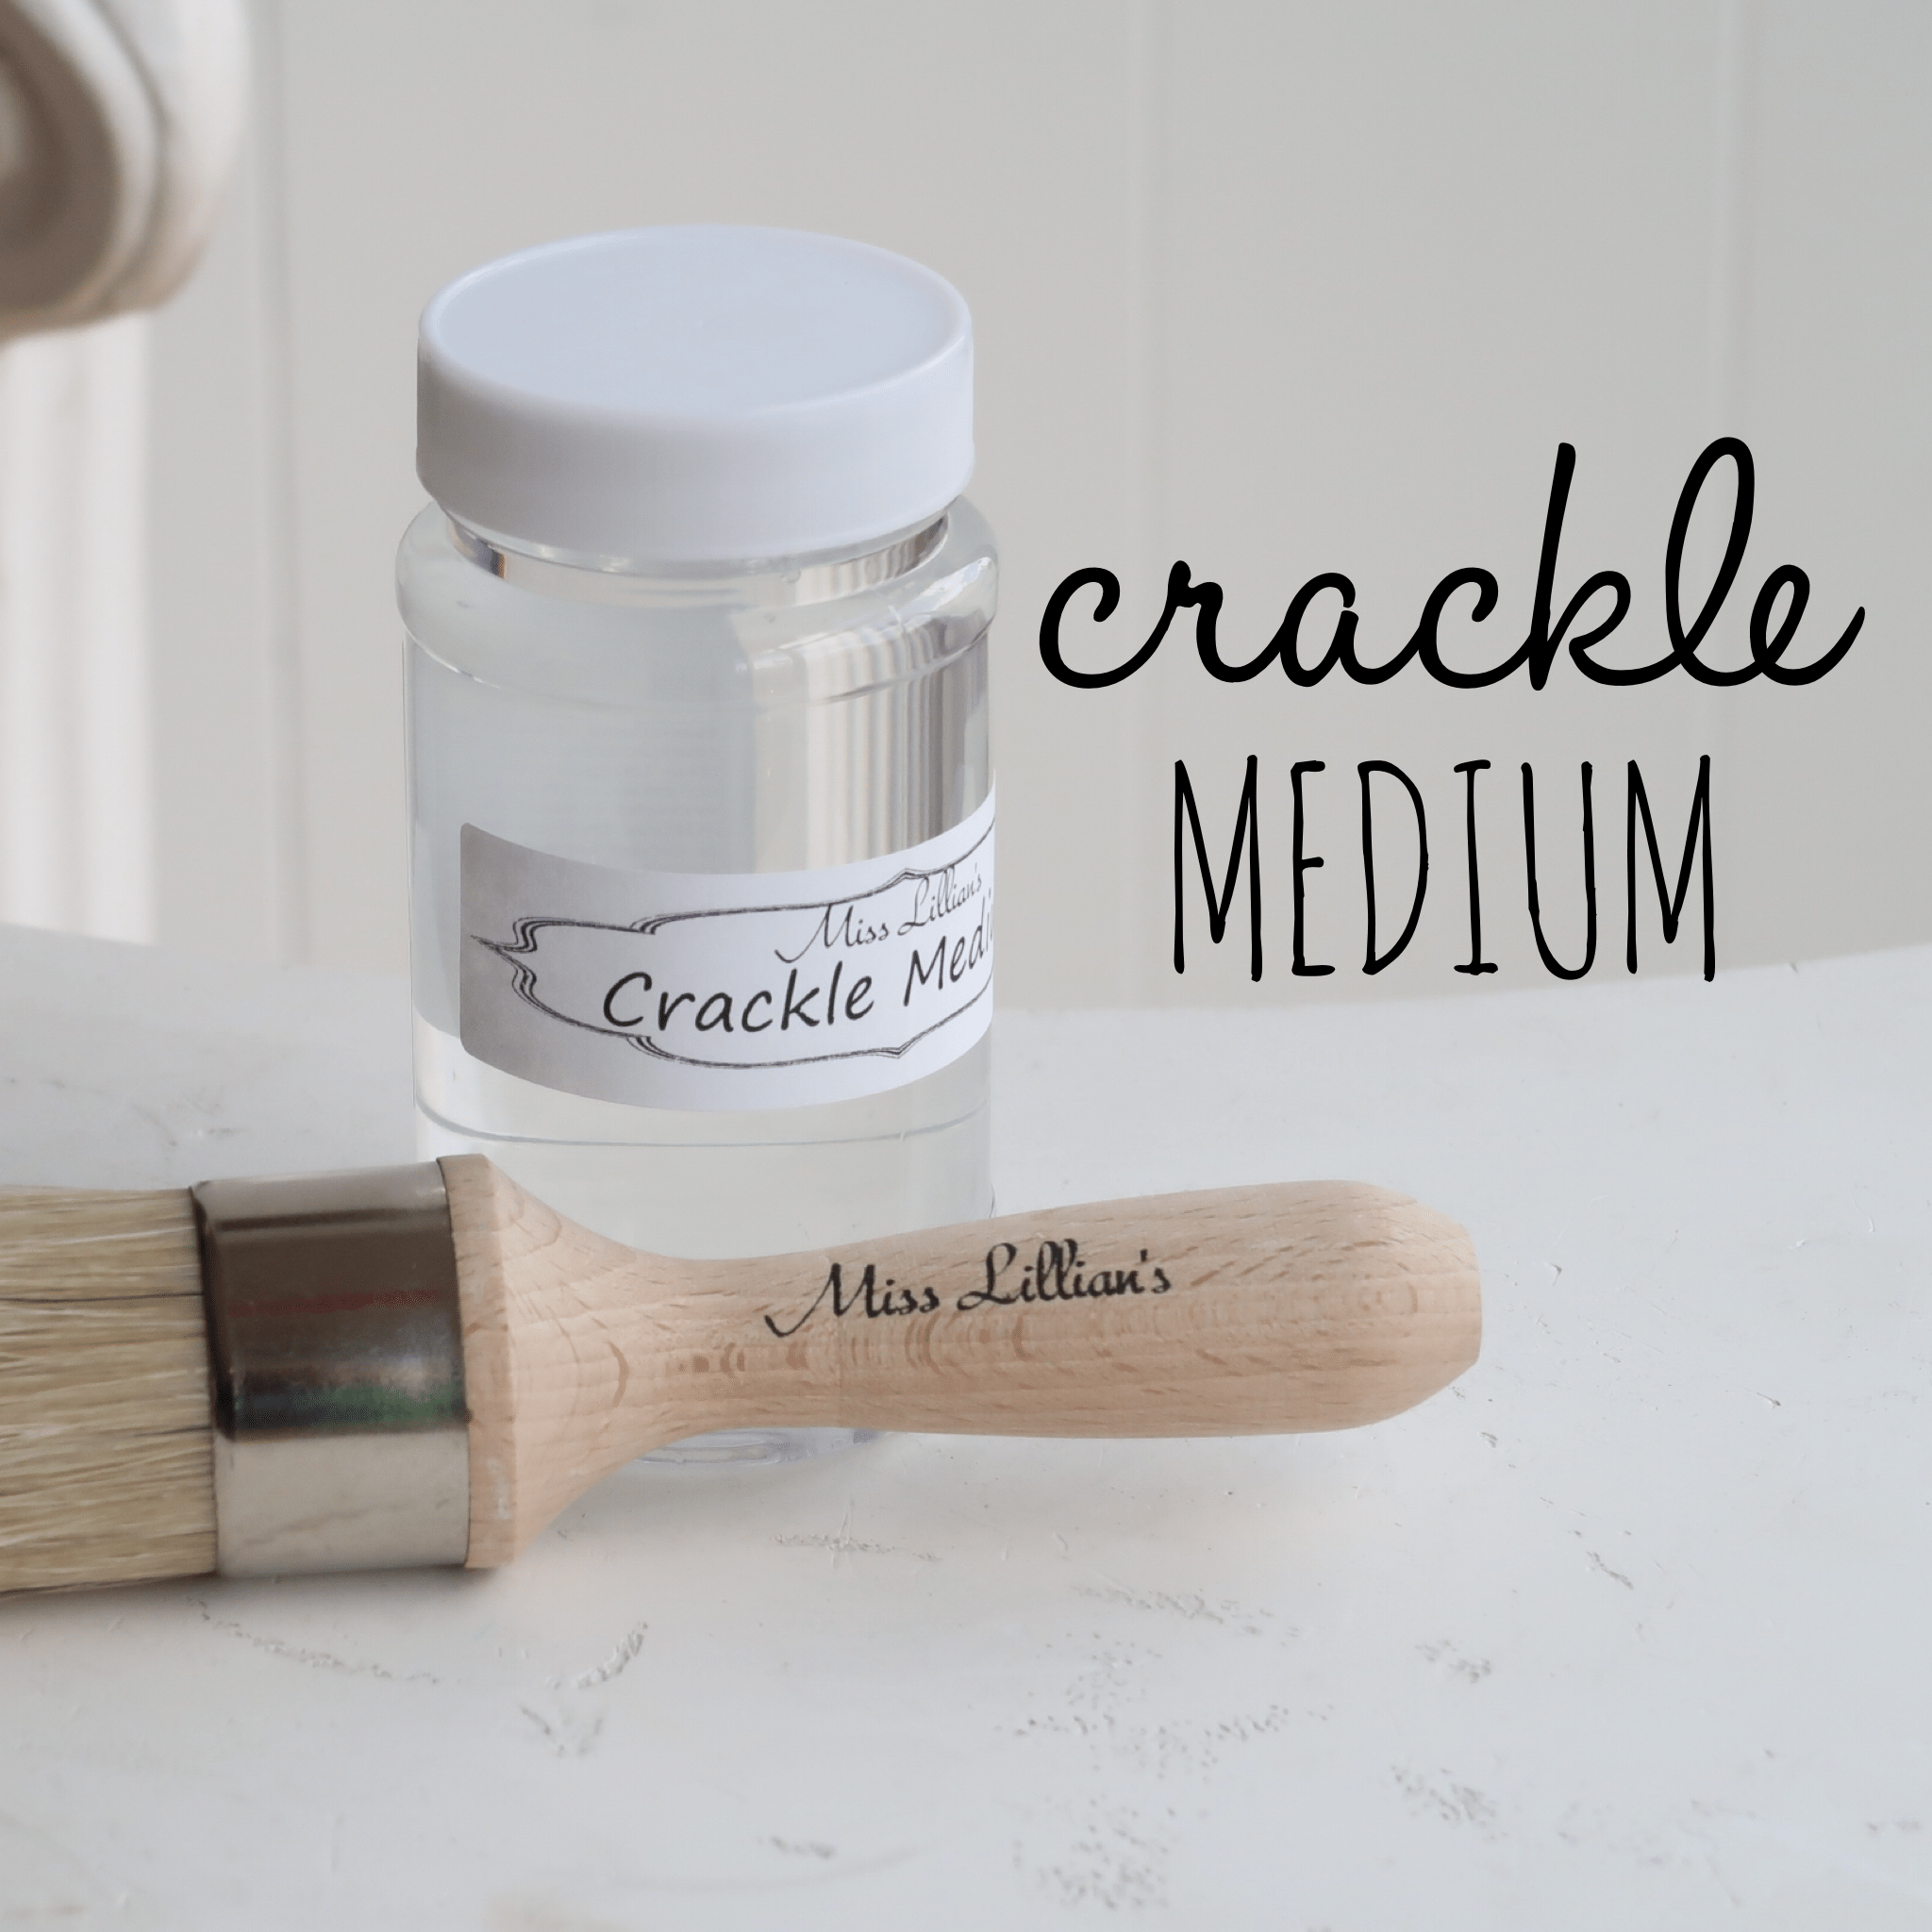 Crackle medium